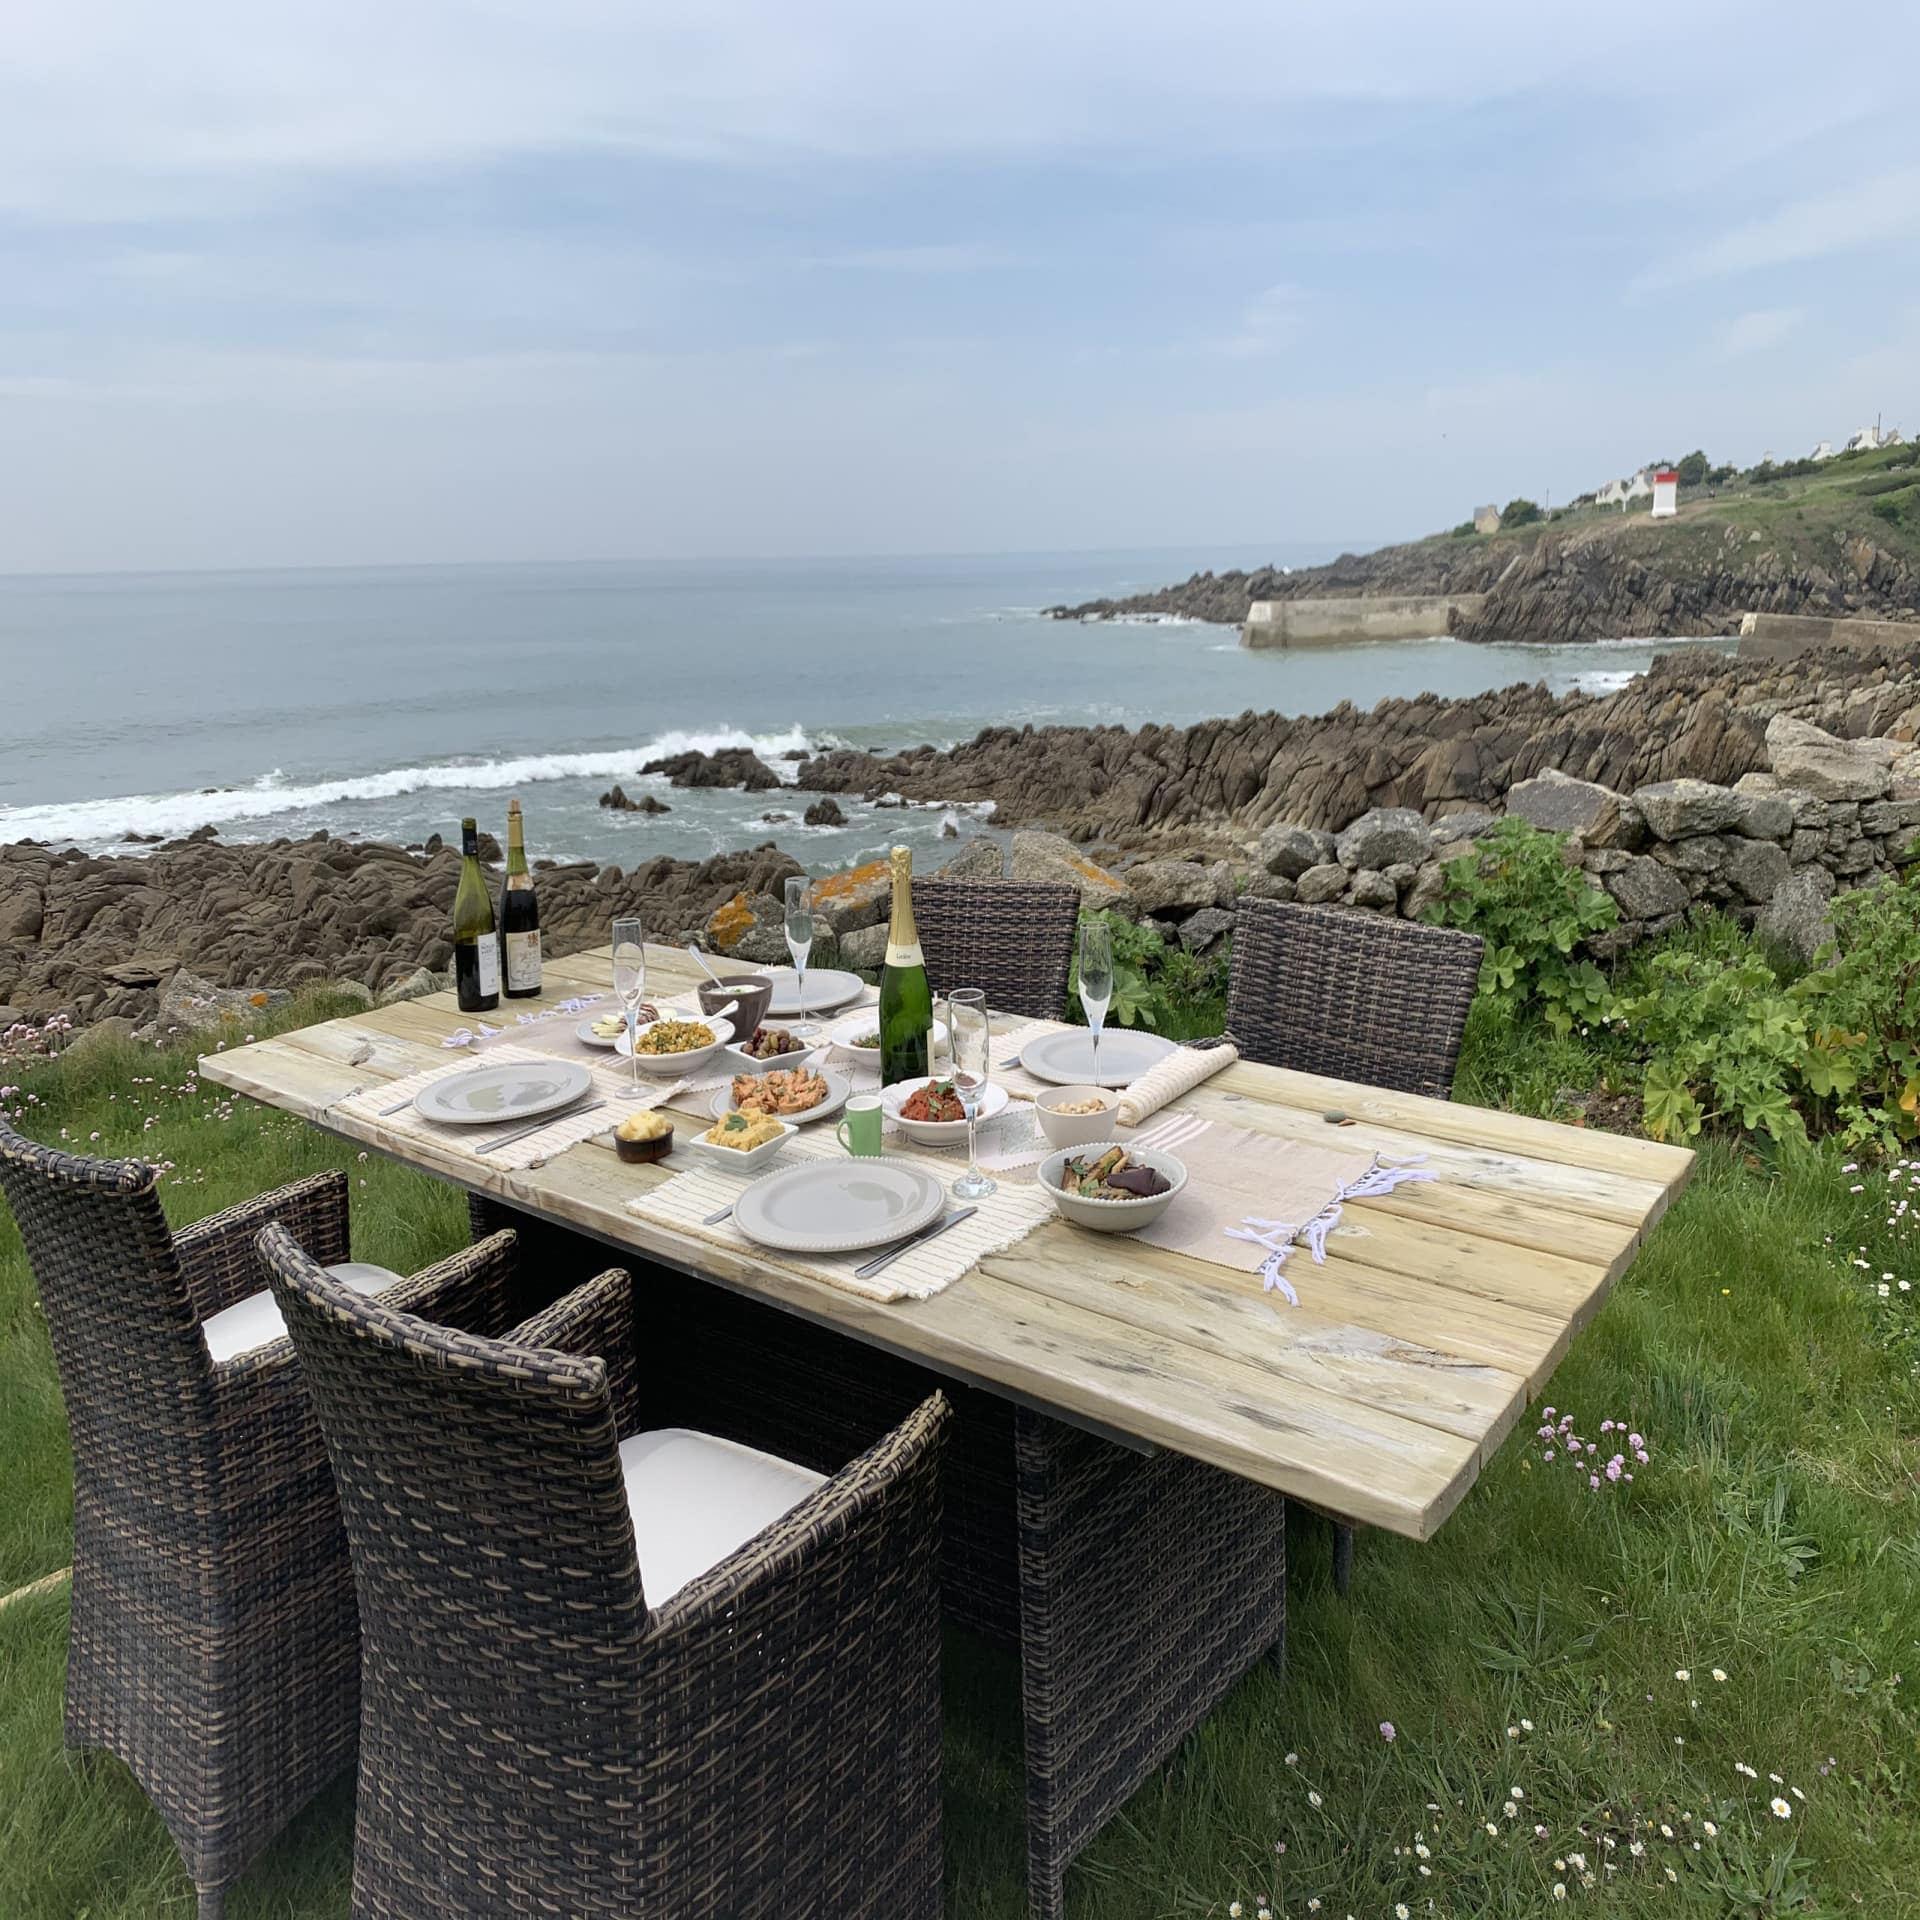 Gedeckter Tisch für 4 Personen mit Essen Champagner in einem grünen Garten direkt an der felsigen Küste an Meer. 